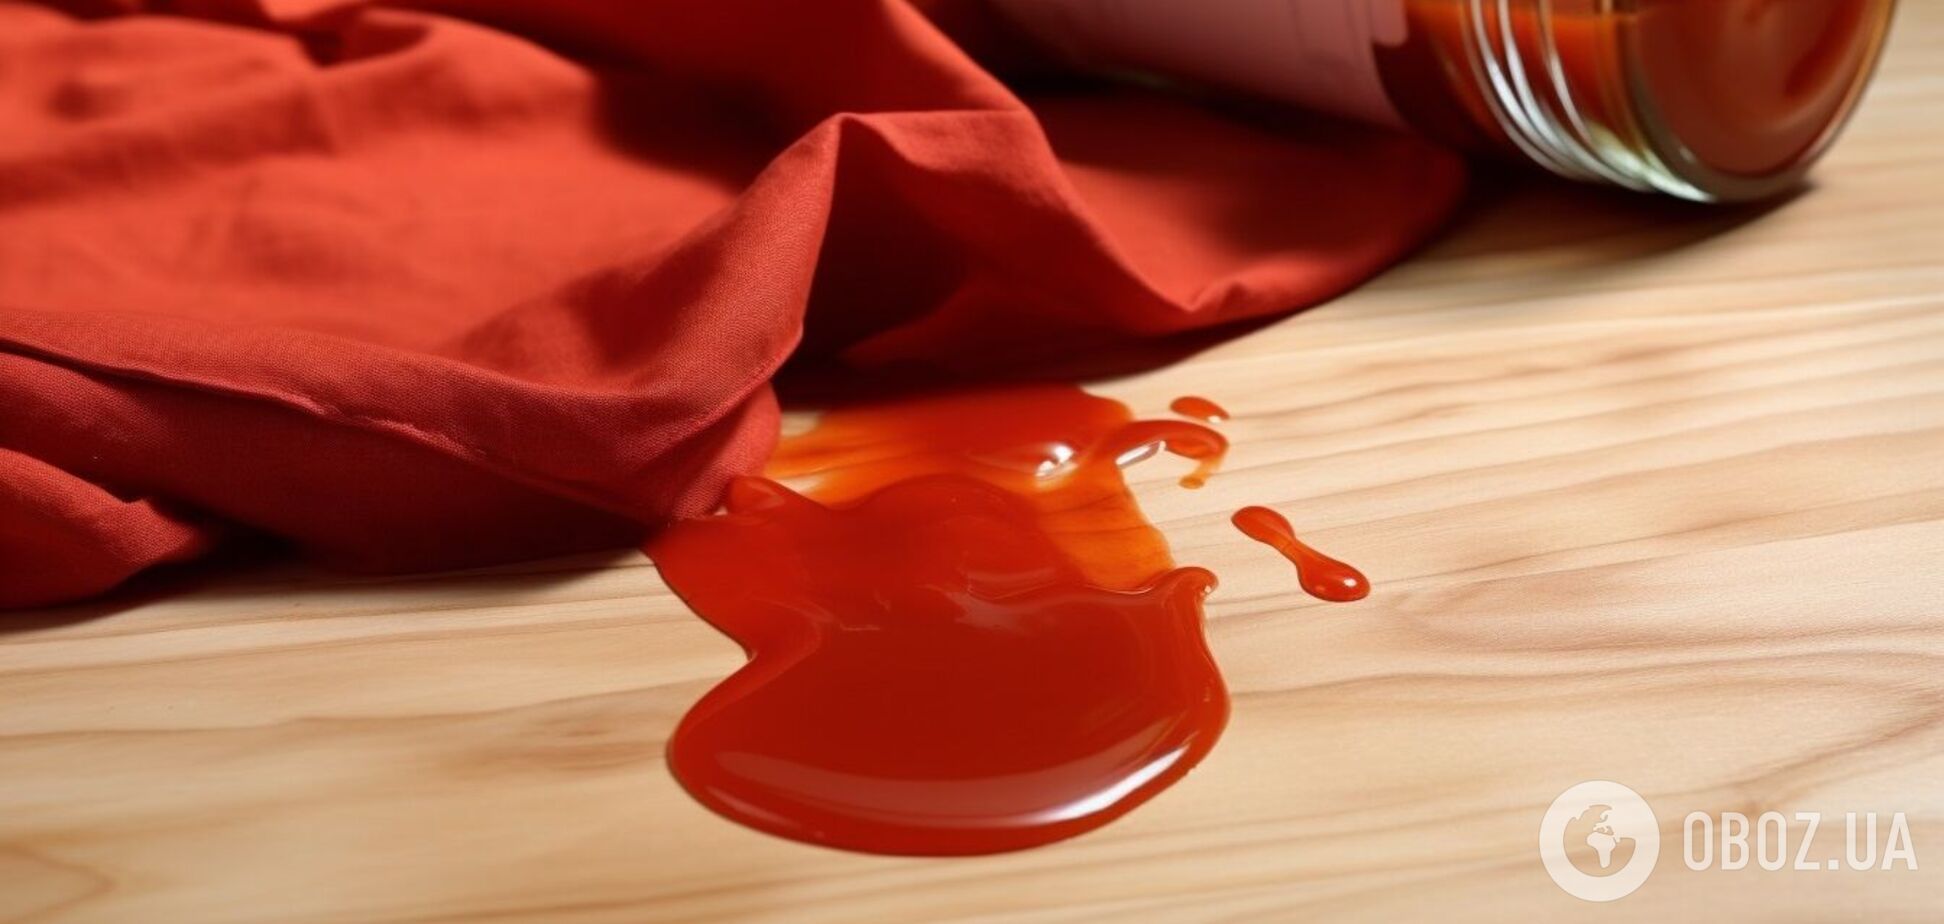 Как отмыть томатный соус с одежды или скатерти: действенный метод